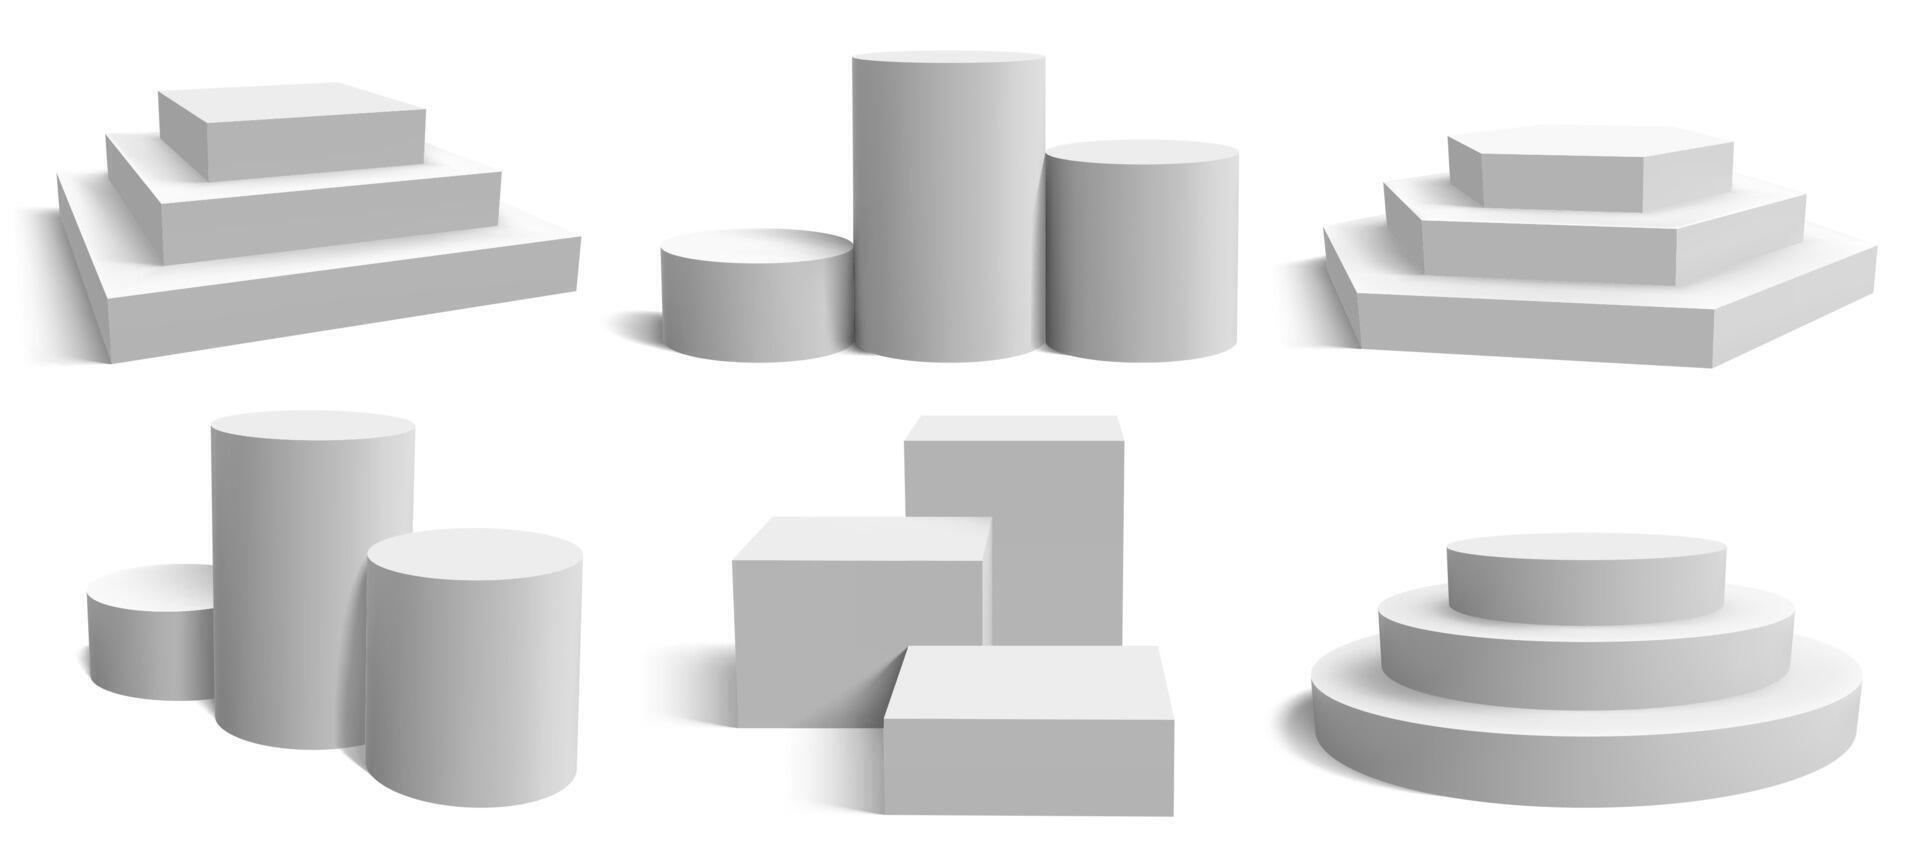 étape podium plates-formes. réaliste blanc carré et rond piédestal, géométrique vide supporter étape vecteur illustration ensemble